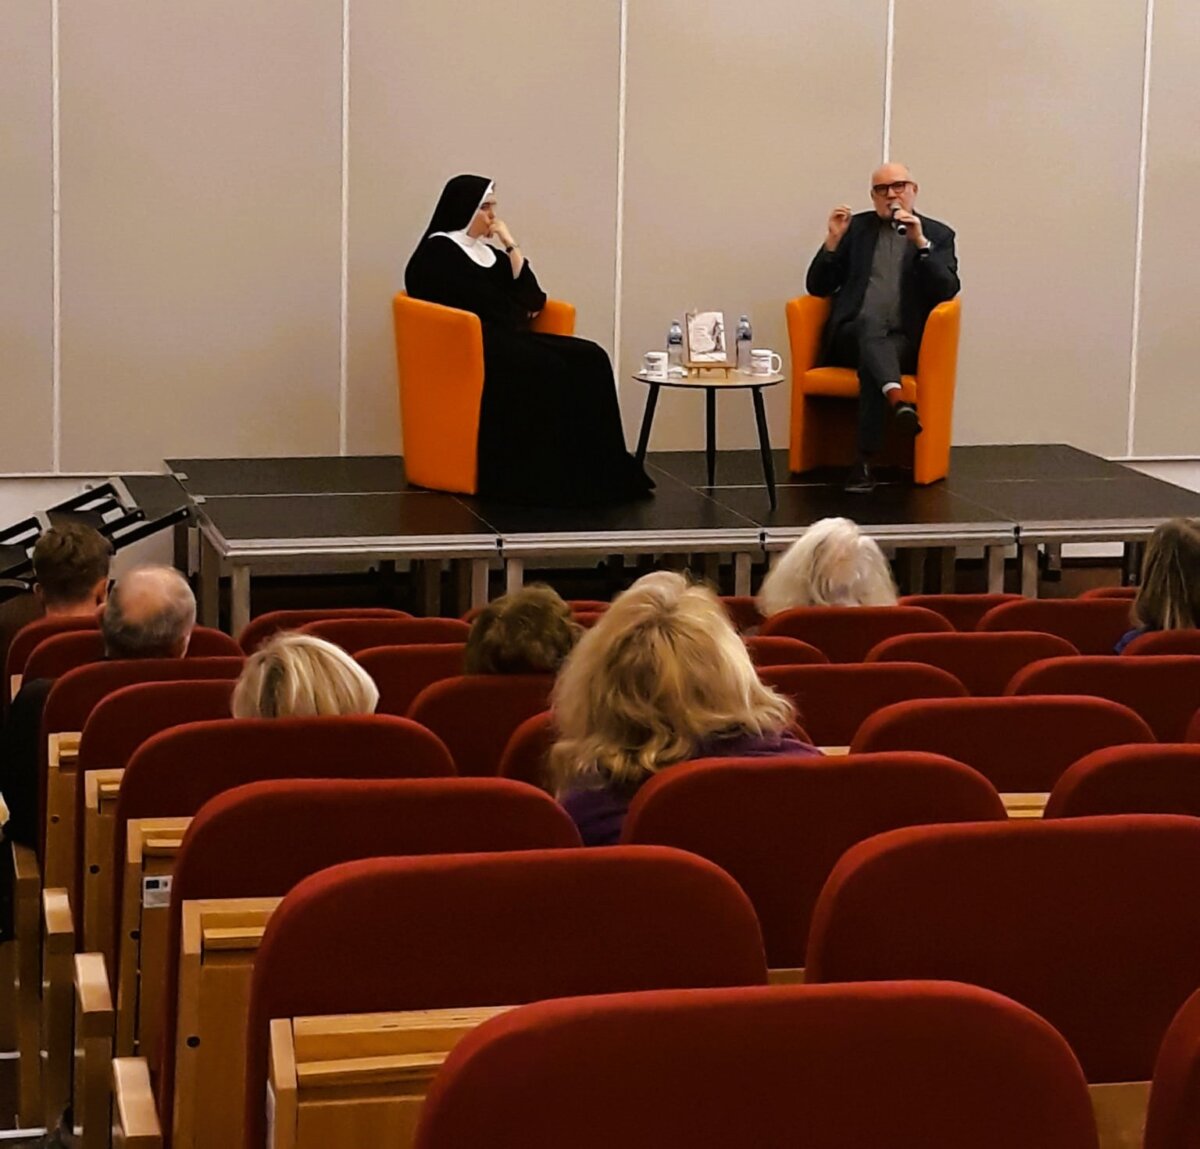 fotografia prezentuje siedzących na fotelach: księdza i siostrę zakonną, rozmawiających o promowanej książce. Na pierwszym planie widać siedzących uczestników spotkania.